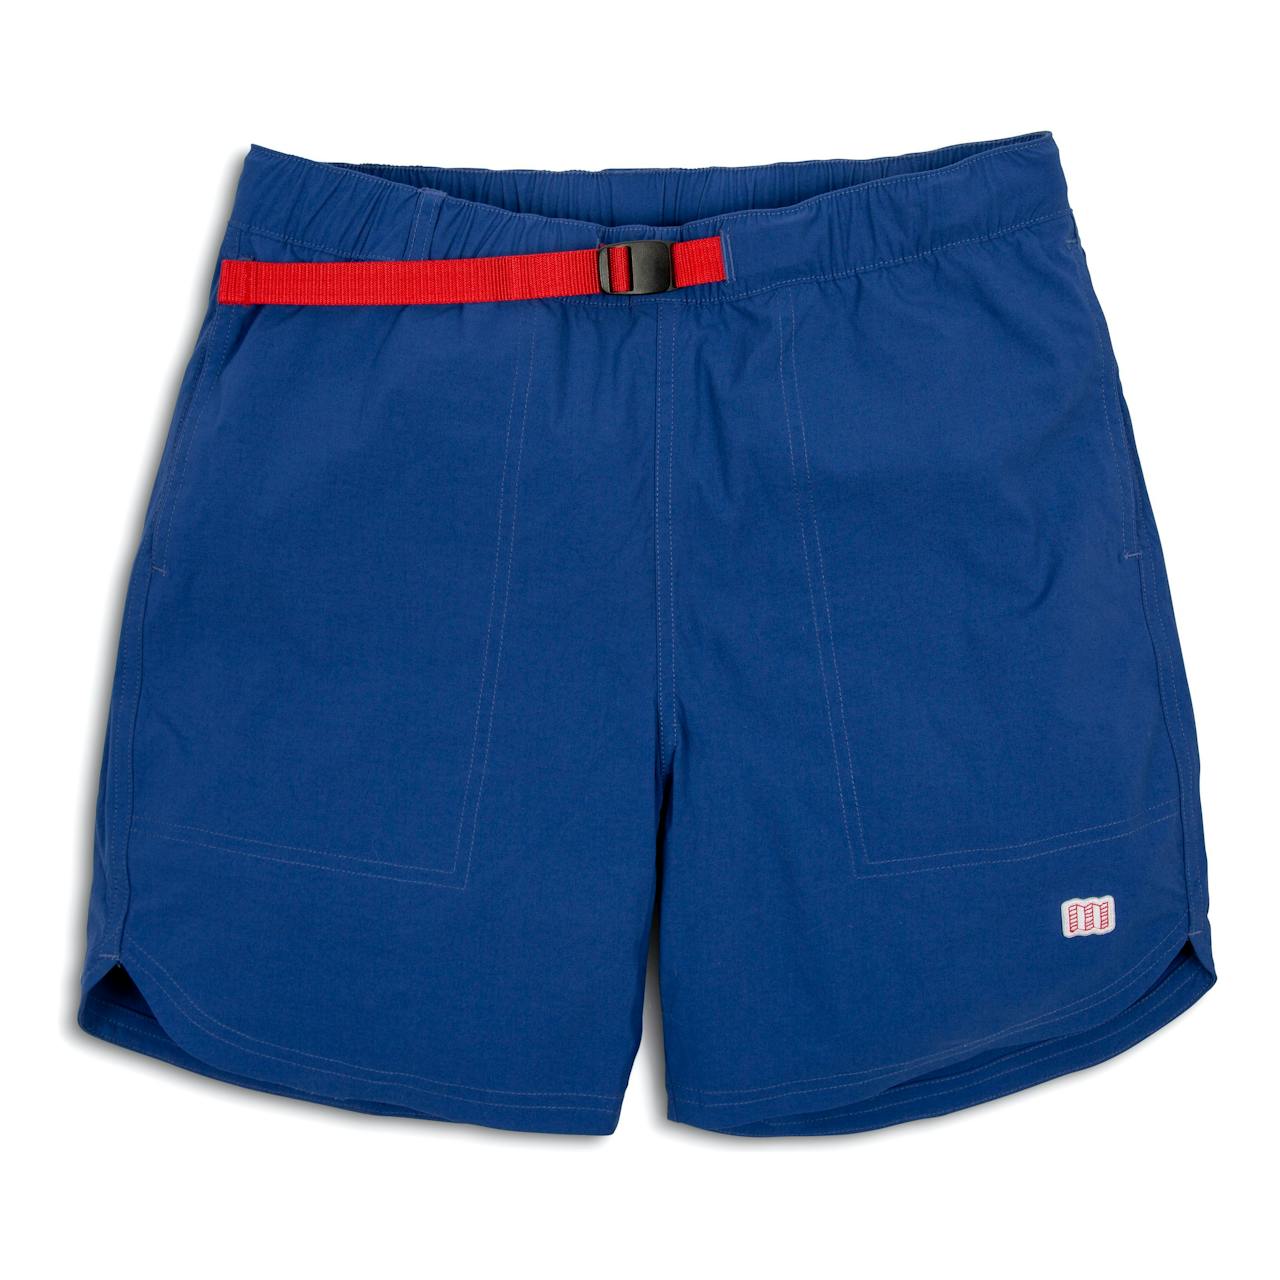 Topo Designs River Shorts - 6"